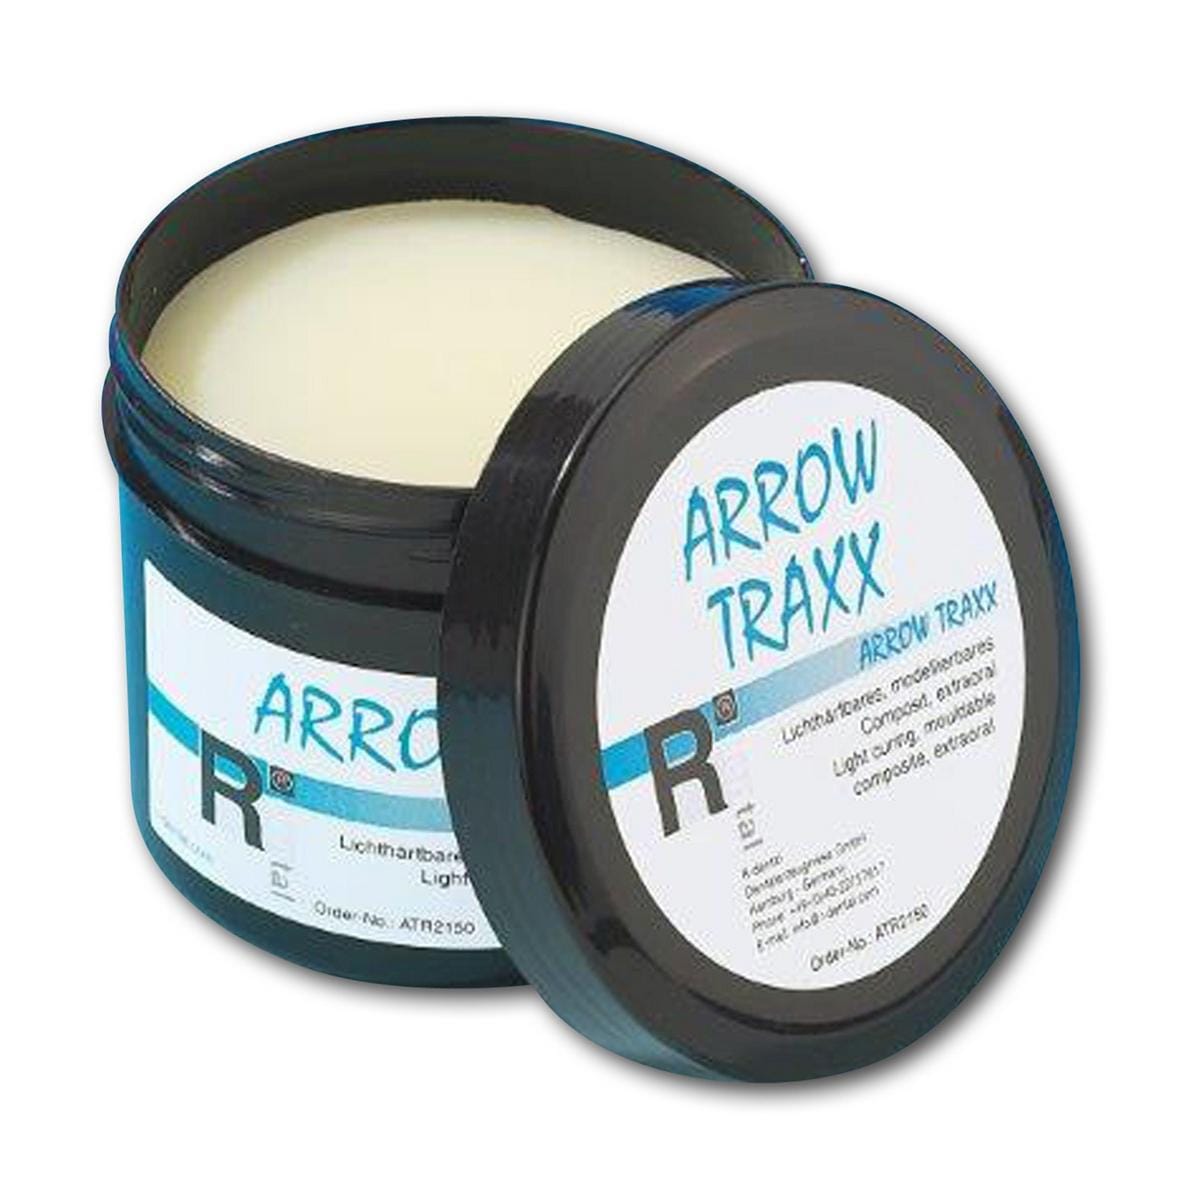 Arrow Traxx - Dose 200 g